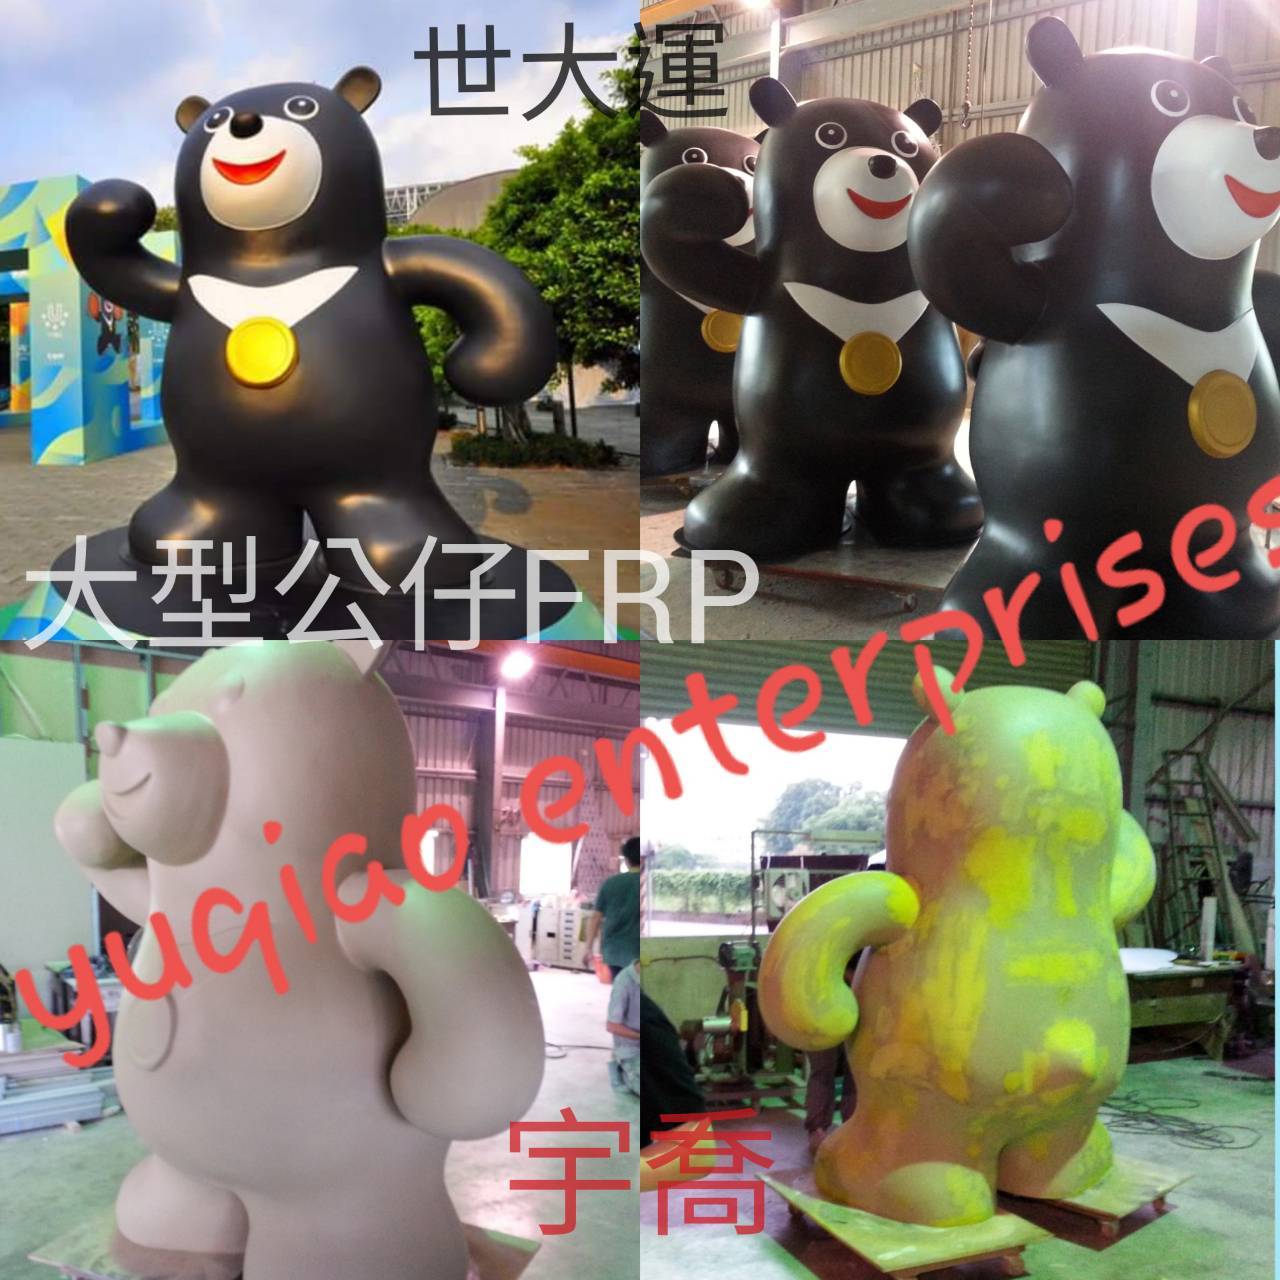 熊讚，是第二十九屆夏季世界大學運動會的官方吉祥物，其形象設定為一隻雄性台灣黑熊。該運動會結束後，其胸前2017字樣金牌被改為「TPE」字樣金牌，正式成為臺北市官方吉祥物，在各種有關臺北市政府及臺灣的官方場合經常出現。